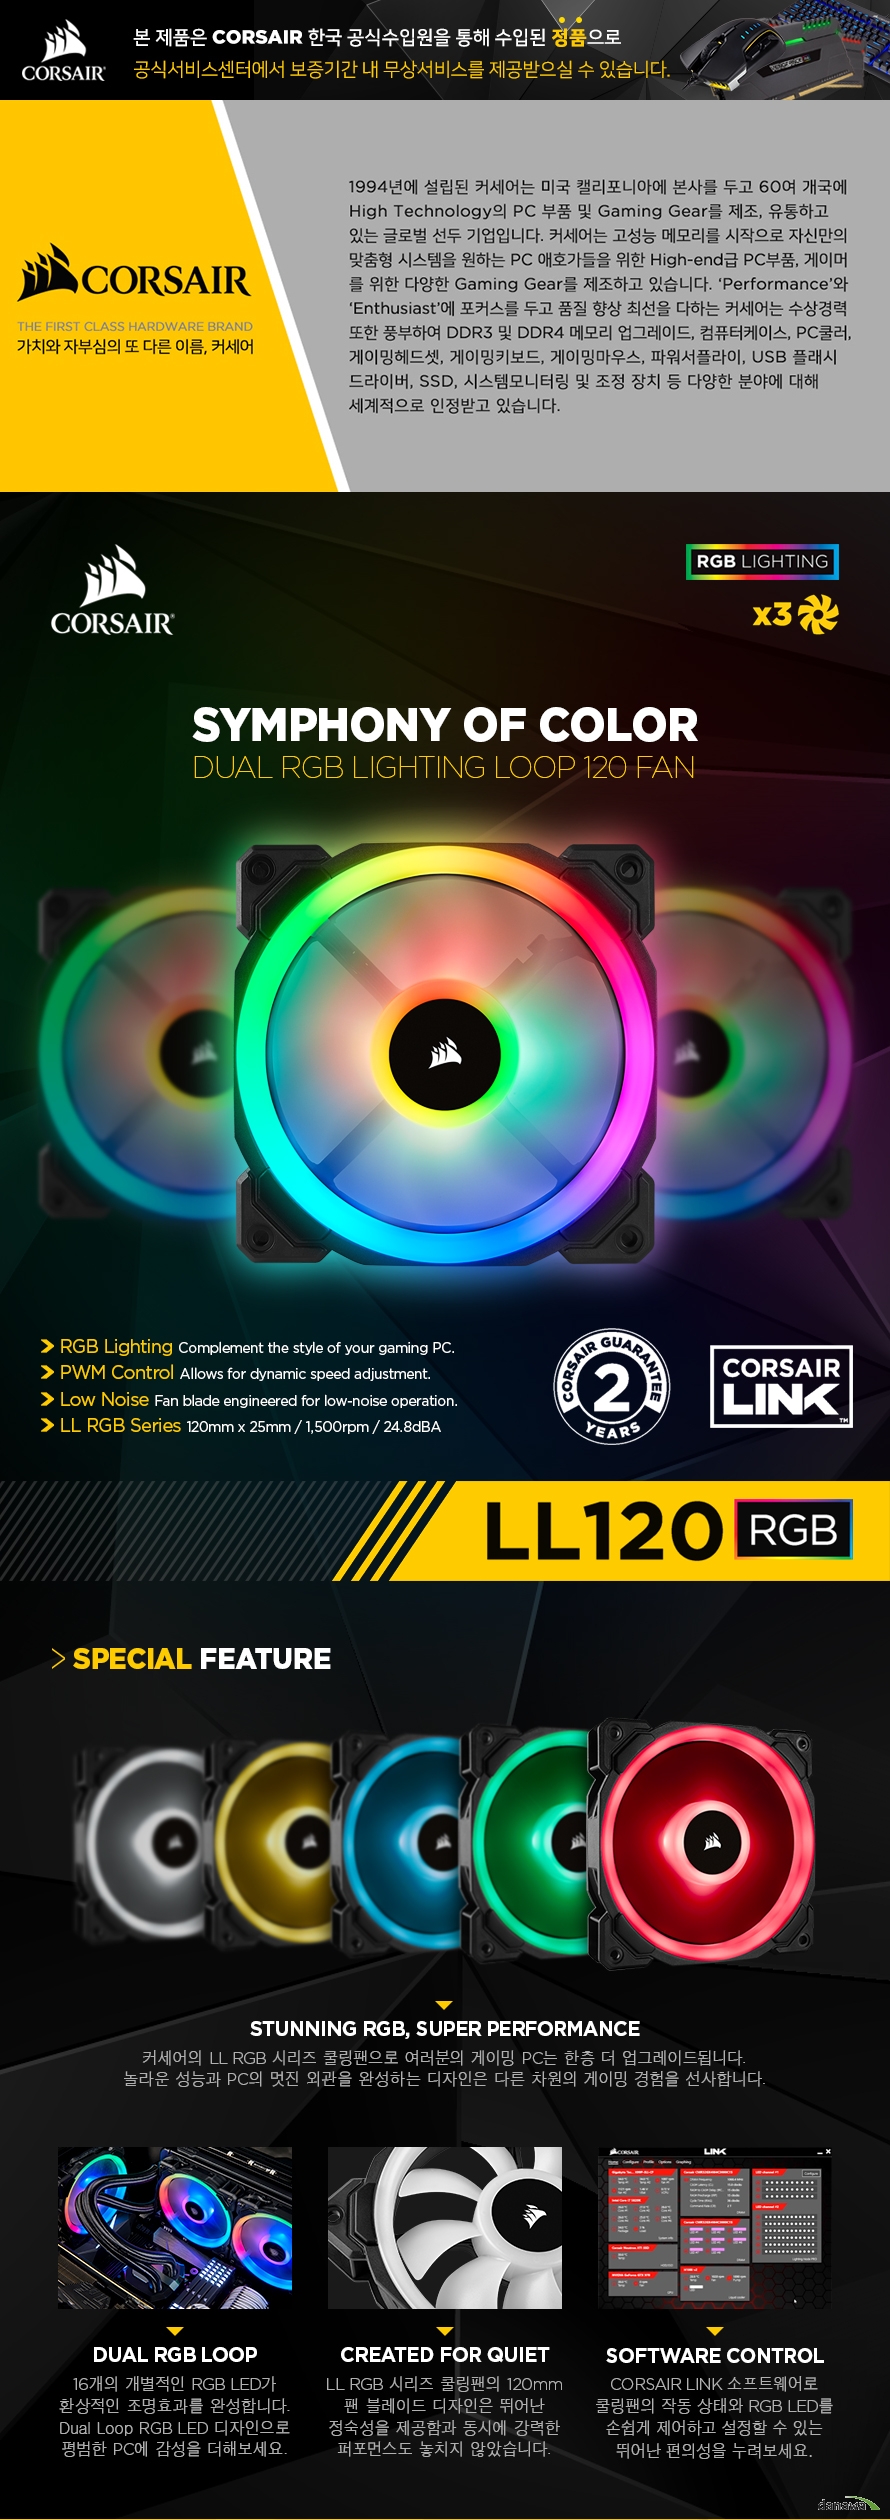 CORSAIR LL 140 RGB 커세어의 LL RGB 시리즈 쿨링팬으로 여러분의 게이밍 PC는 한층 더 업그레이드됩니다. 놀라운 성능과 PC의 멋진 외관을 완성하는 디자인은 다른 차원의 게이밍 경험을 선사합니다.